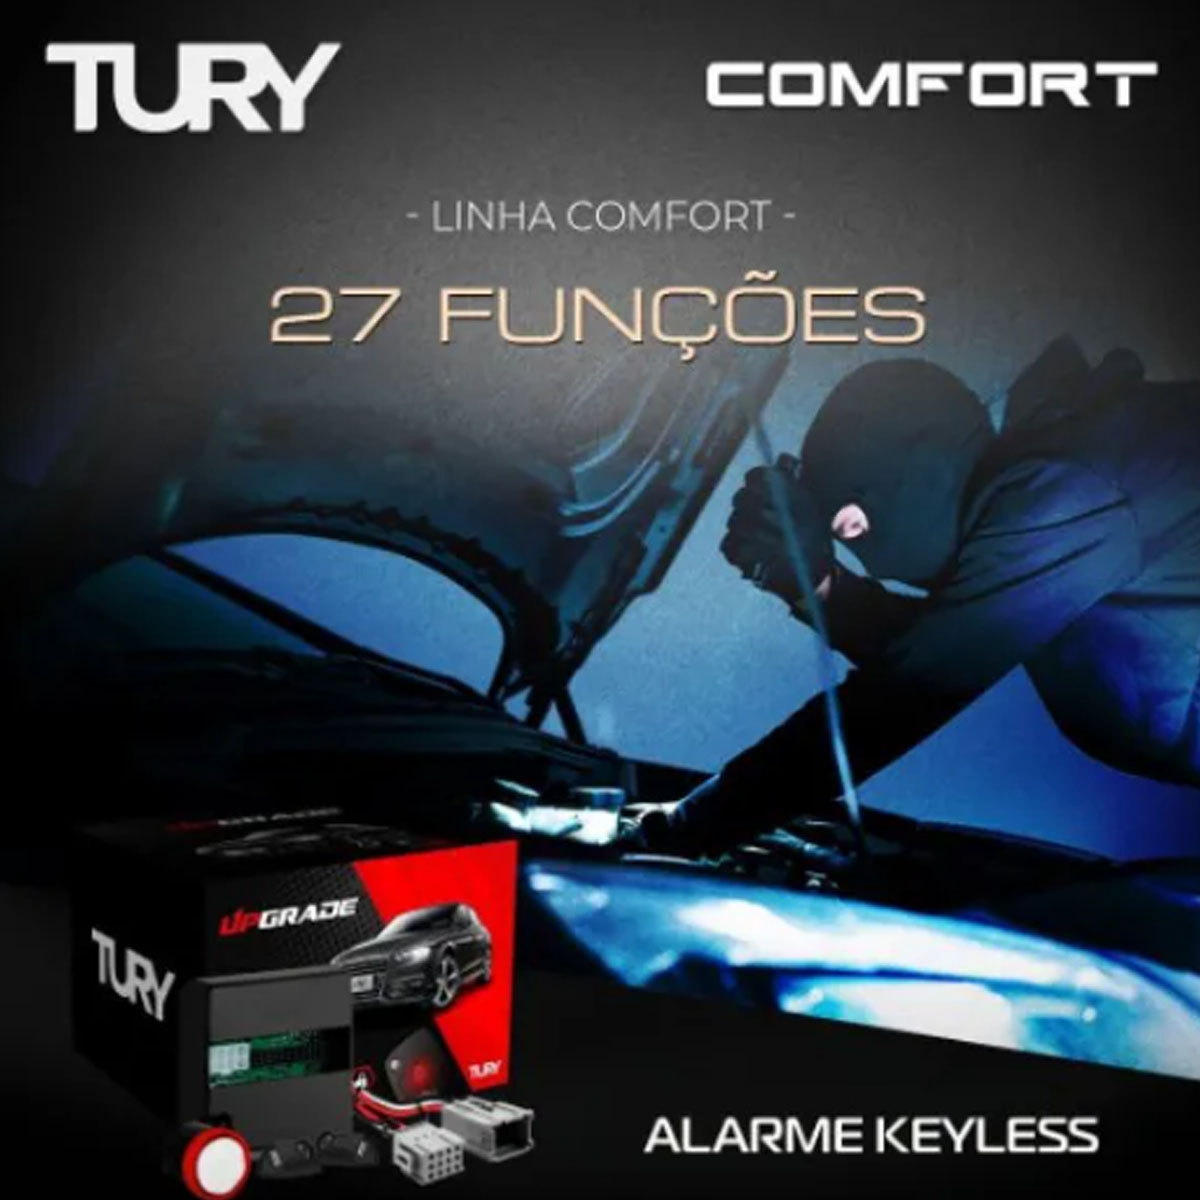 Alarme Tury 26 Funções Keyless HB20 2011 em diante Key Master COMFORT1.3AD